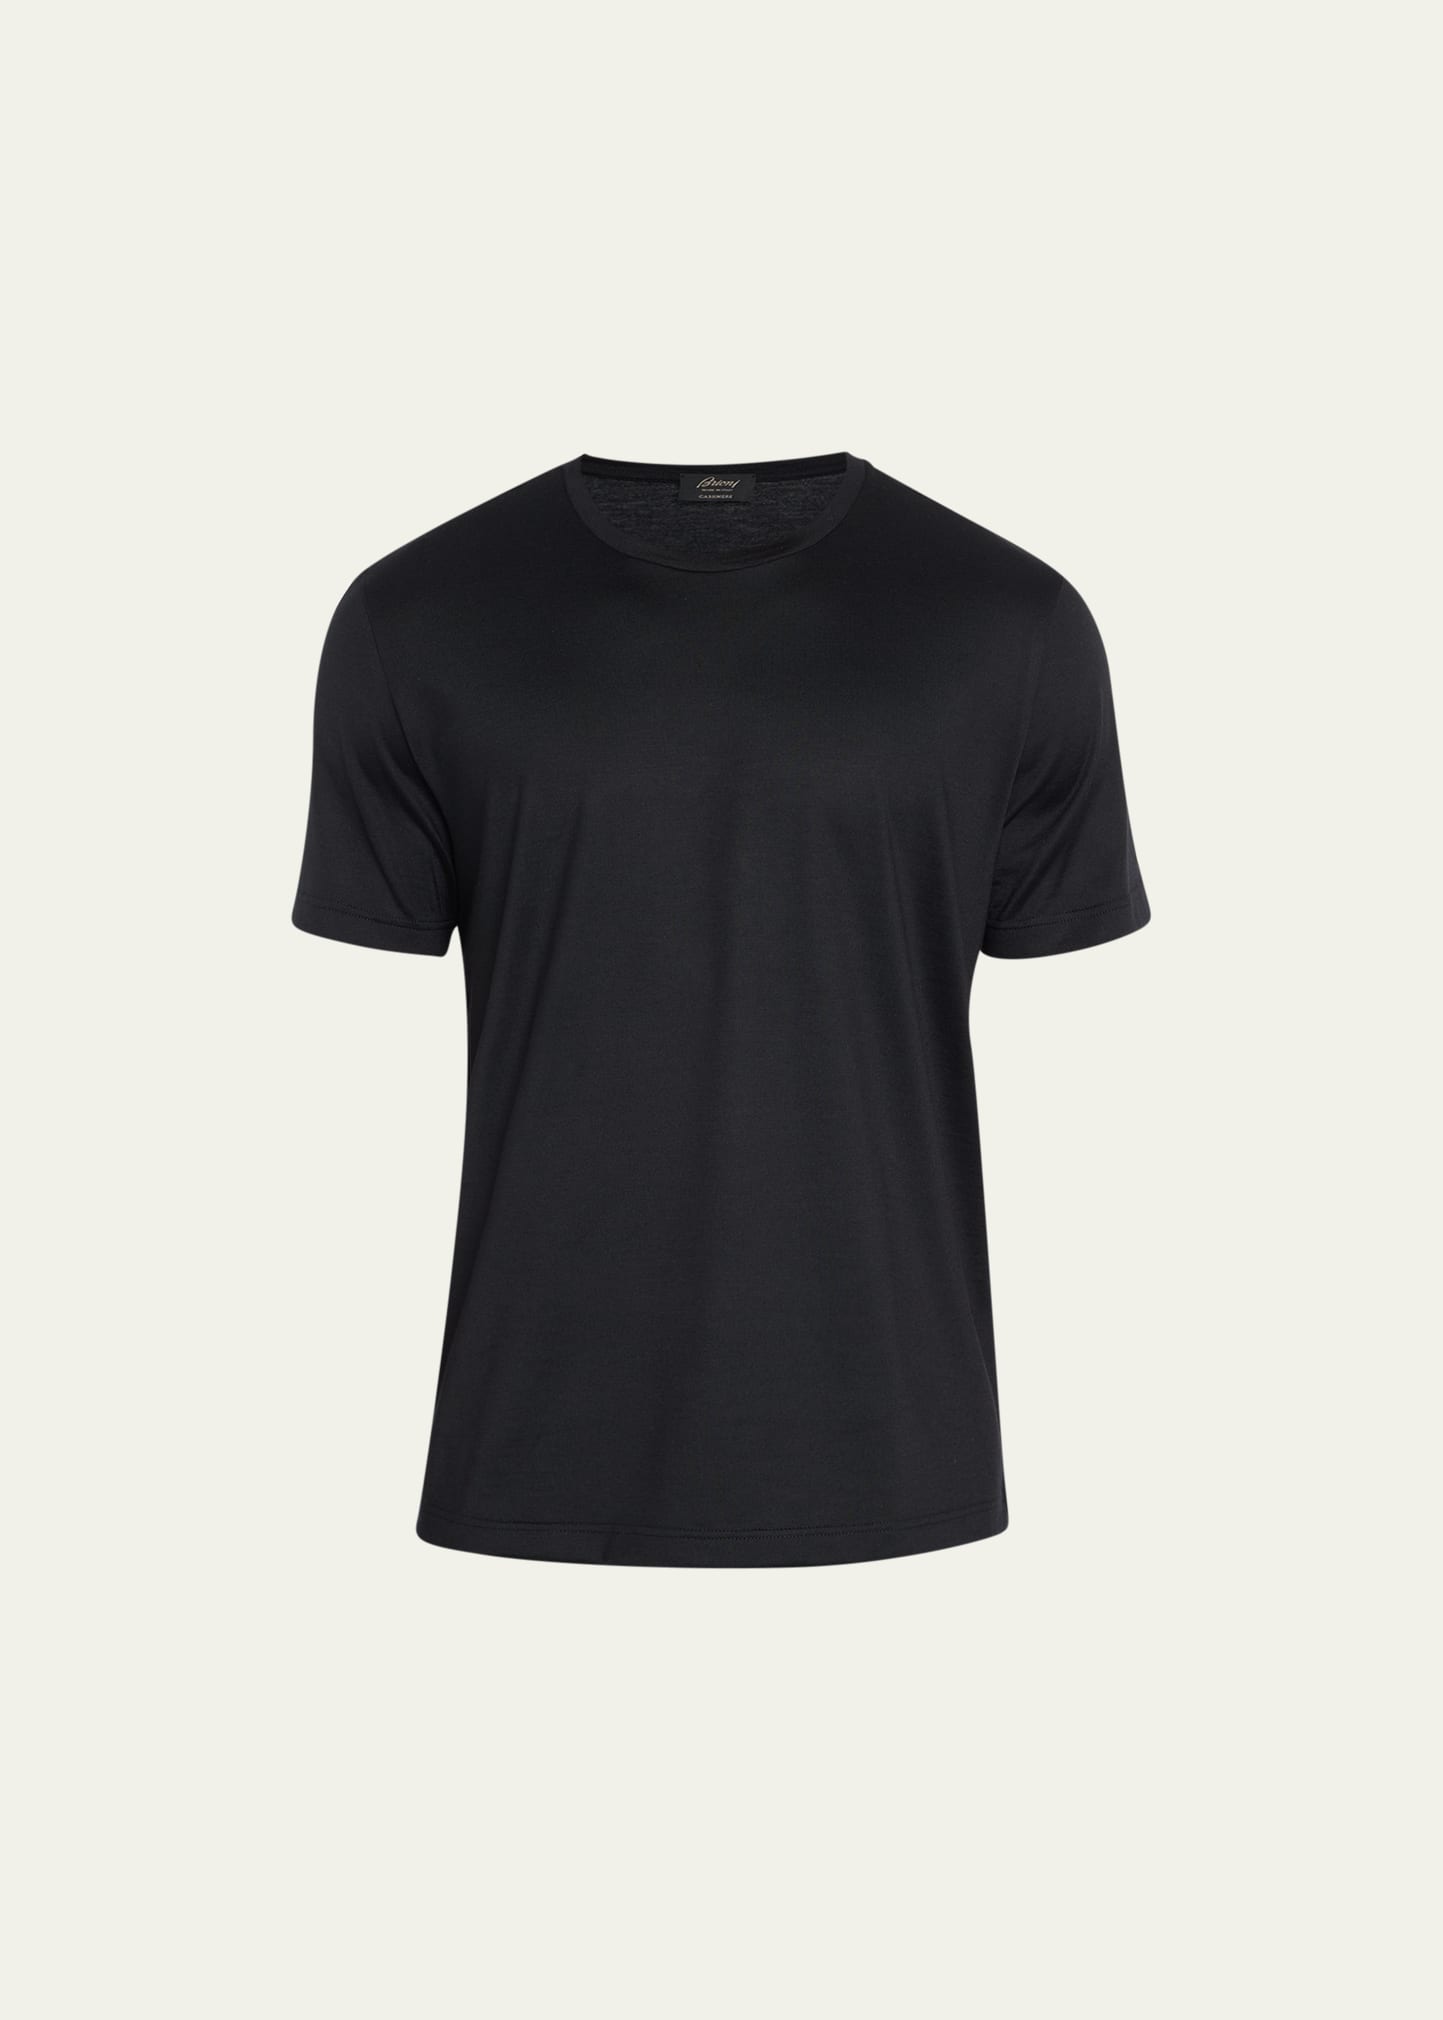 Men's Solid Cashmere T-Shirt